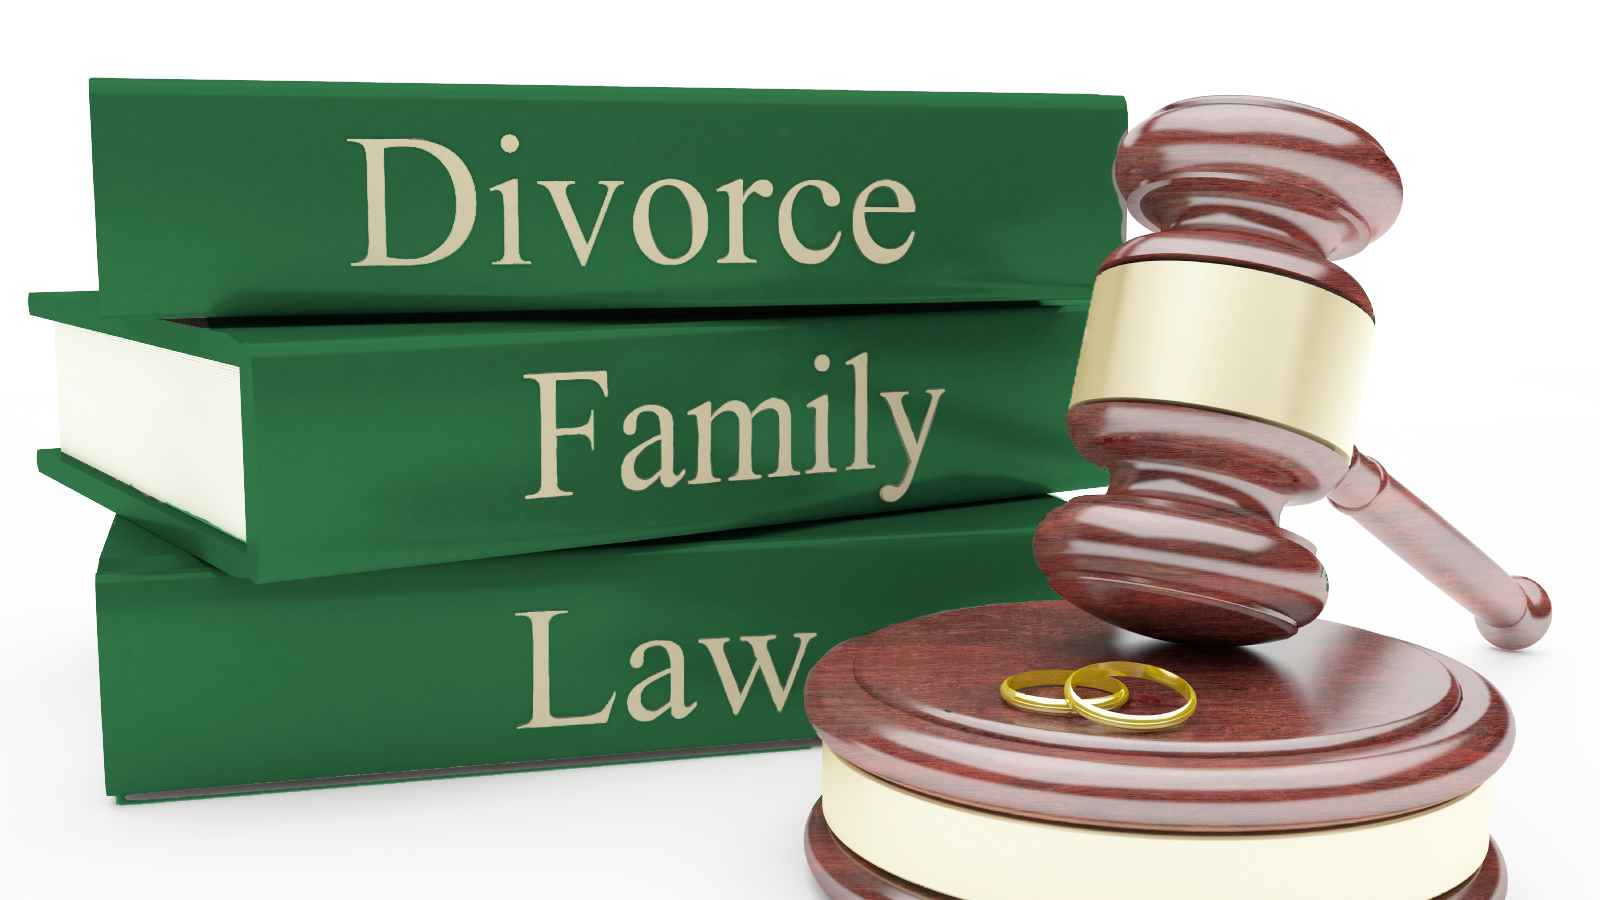 Divorce-Family-Law.jpg